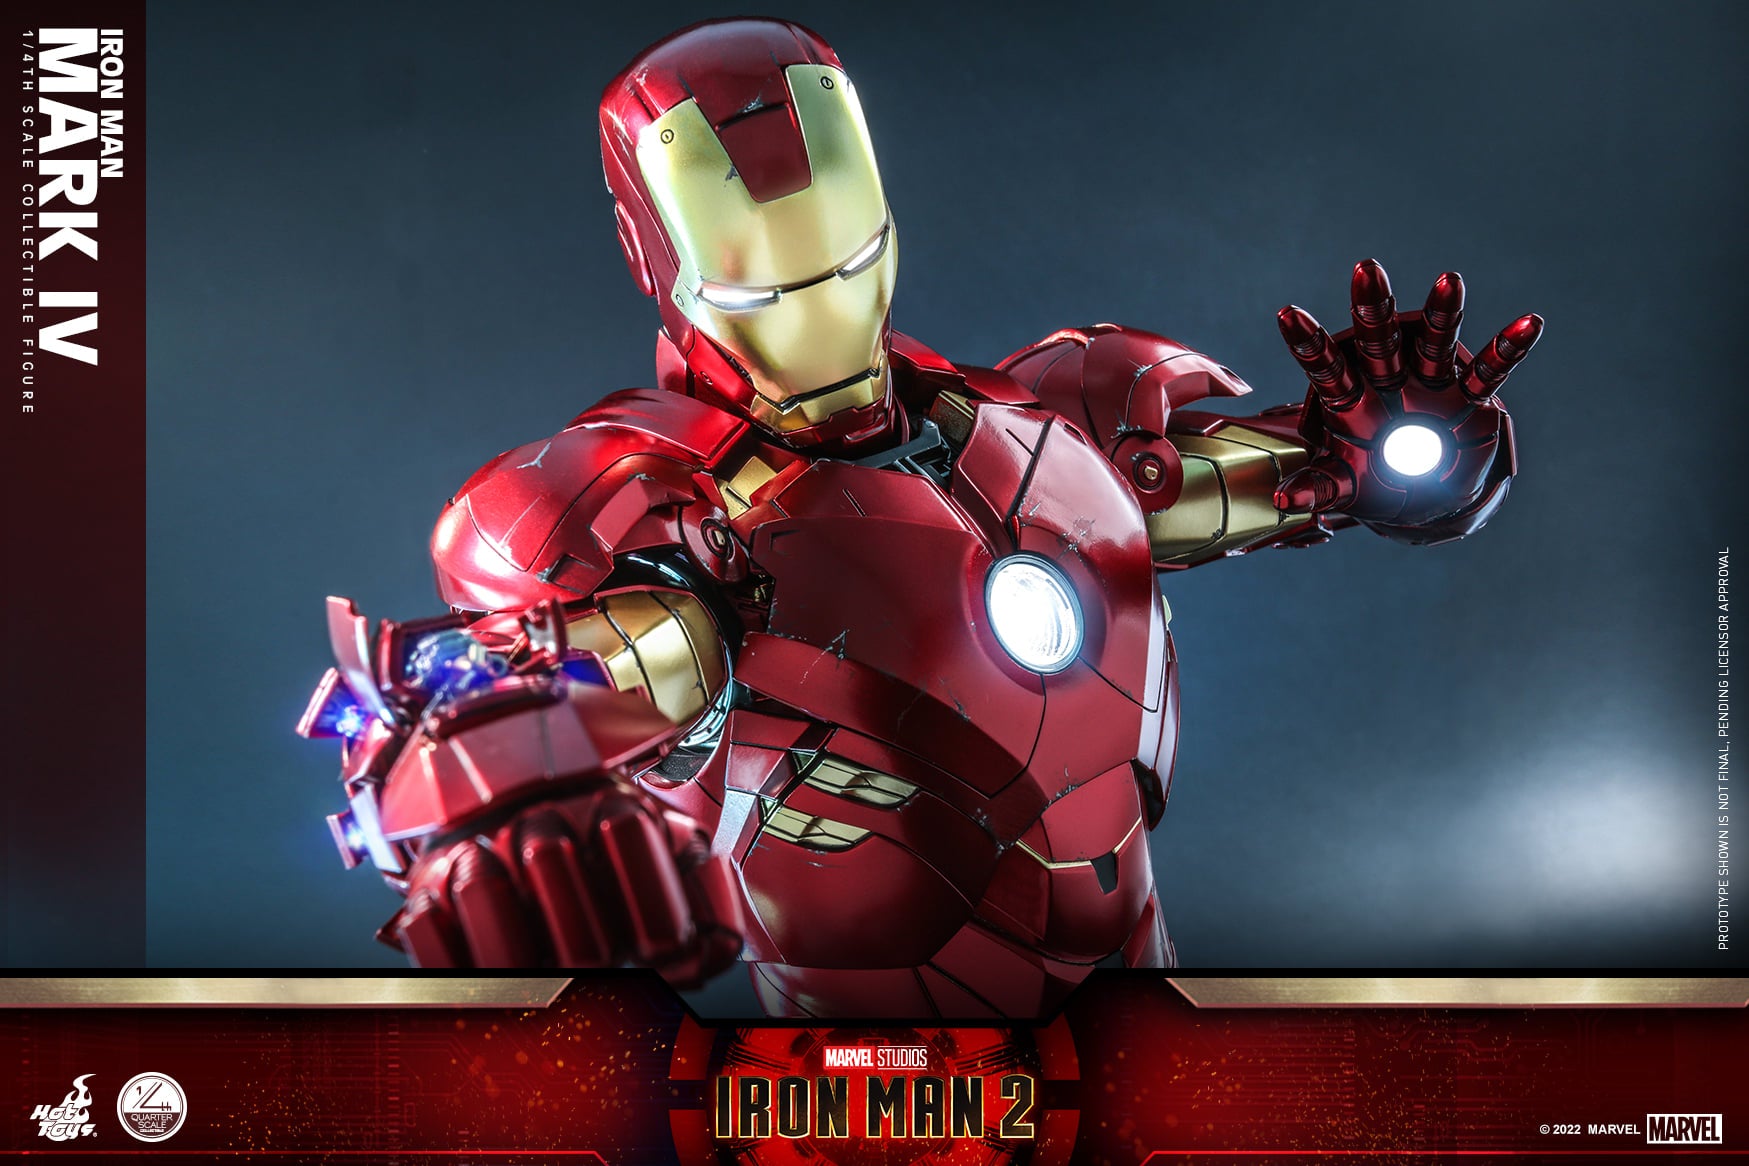 Hot Toys - QS020 - Iron Man 2 - Iron Man Mark IV (1/4 Scale) - Marvelous Toys